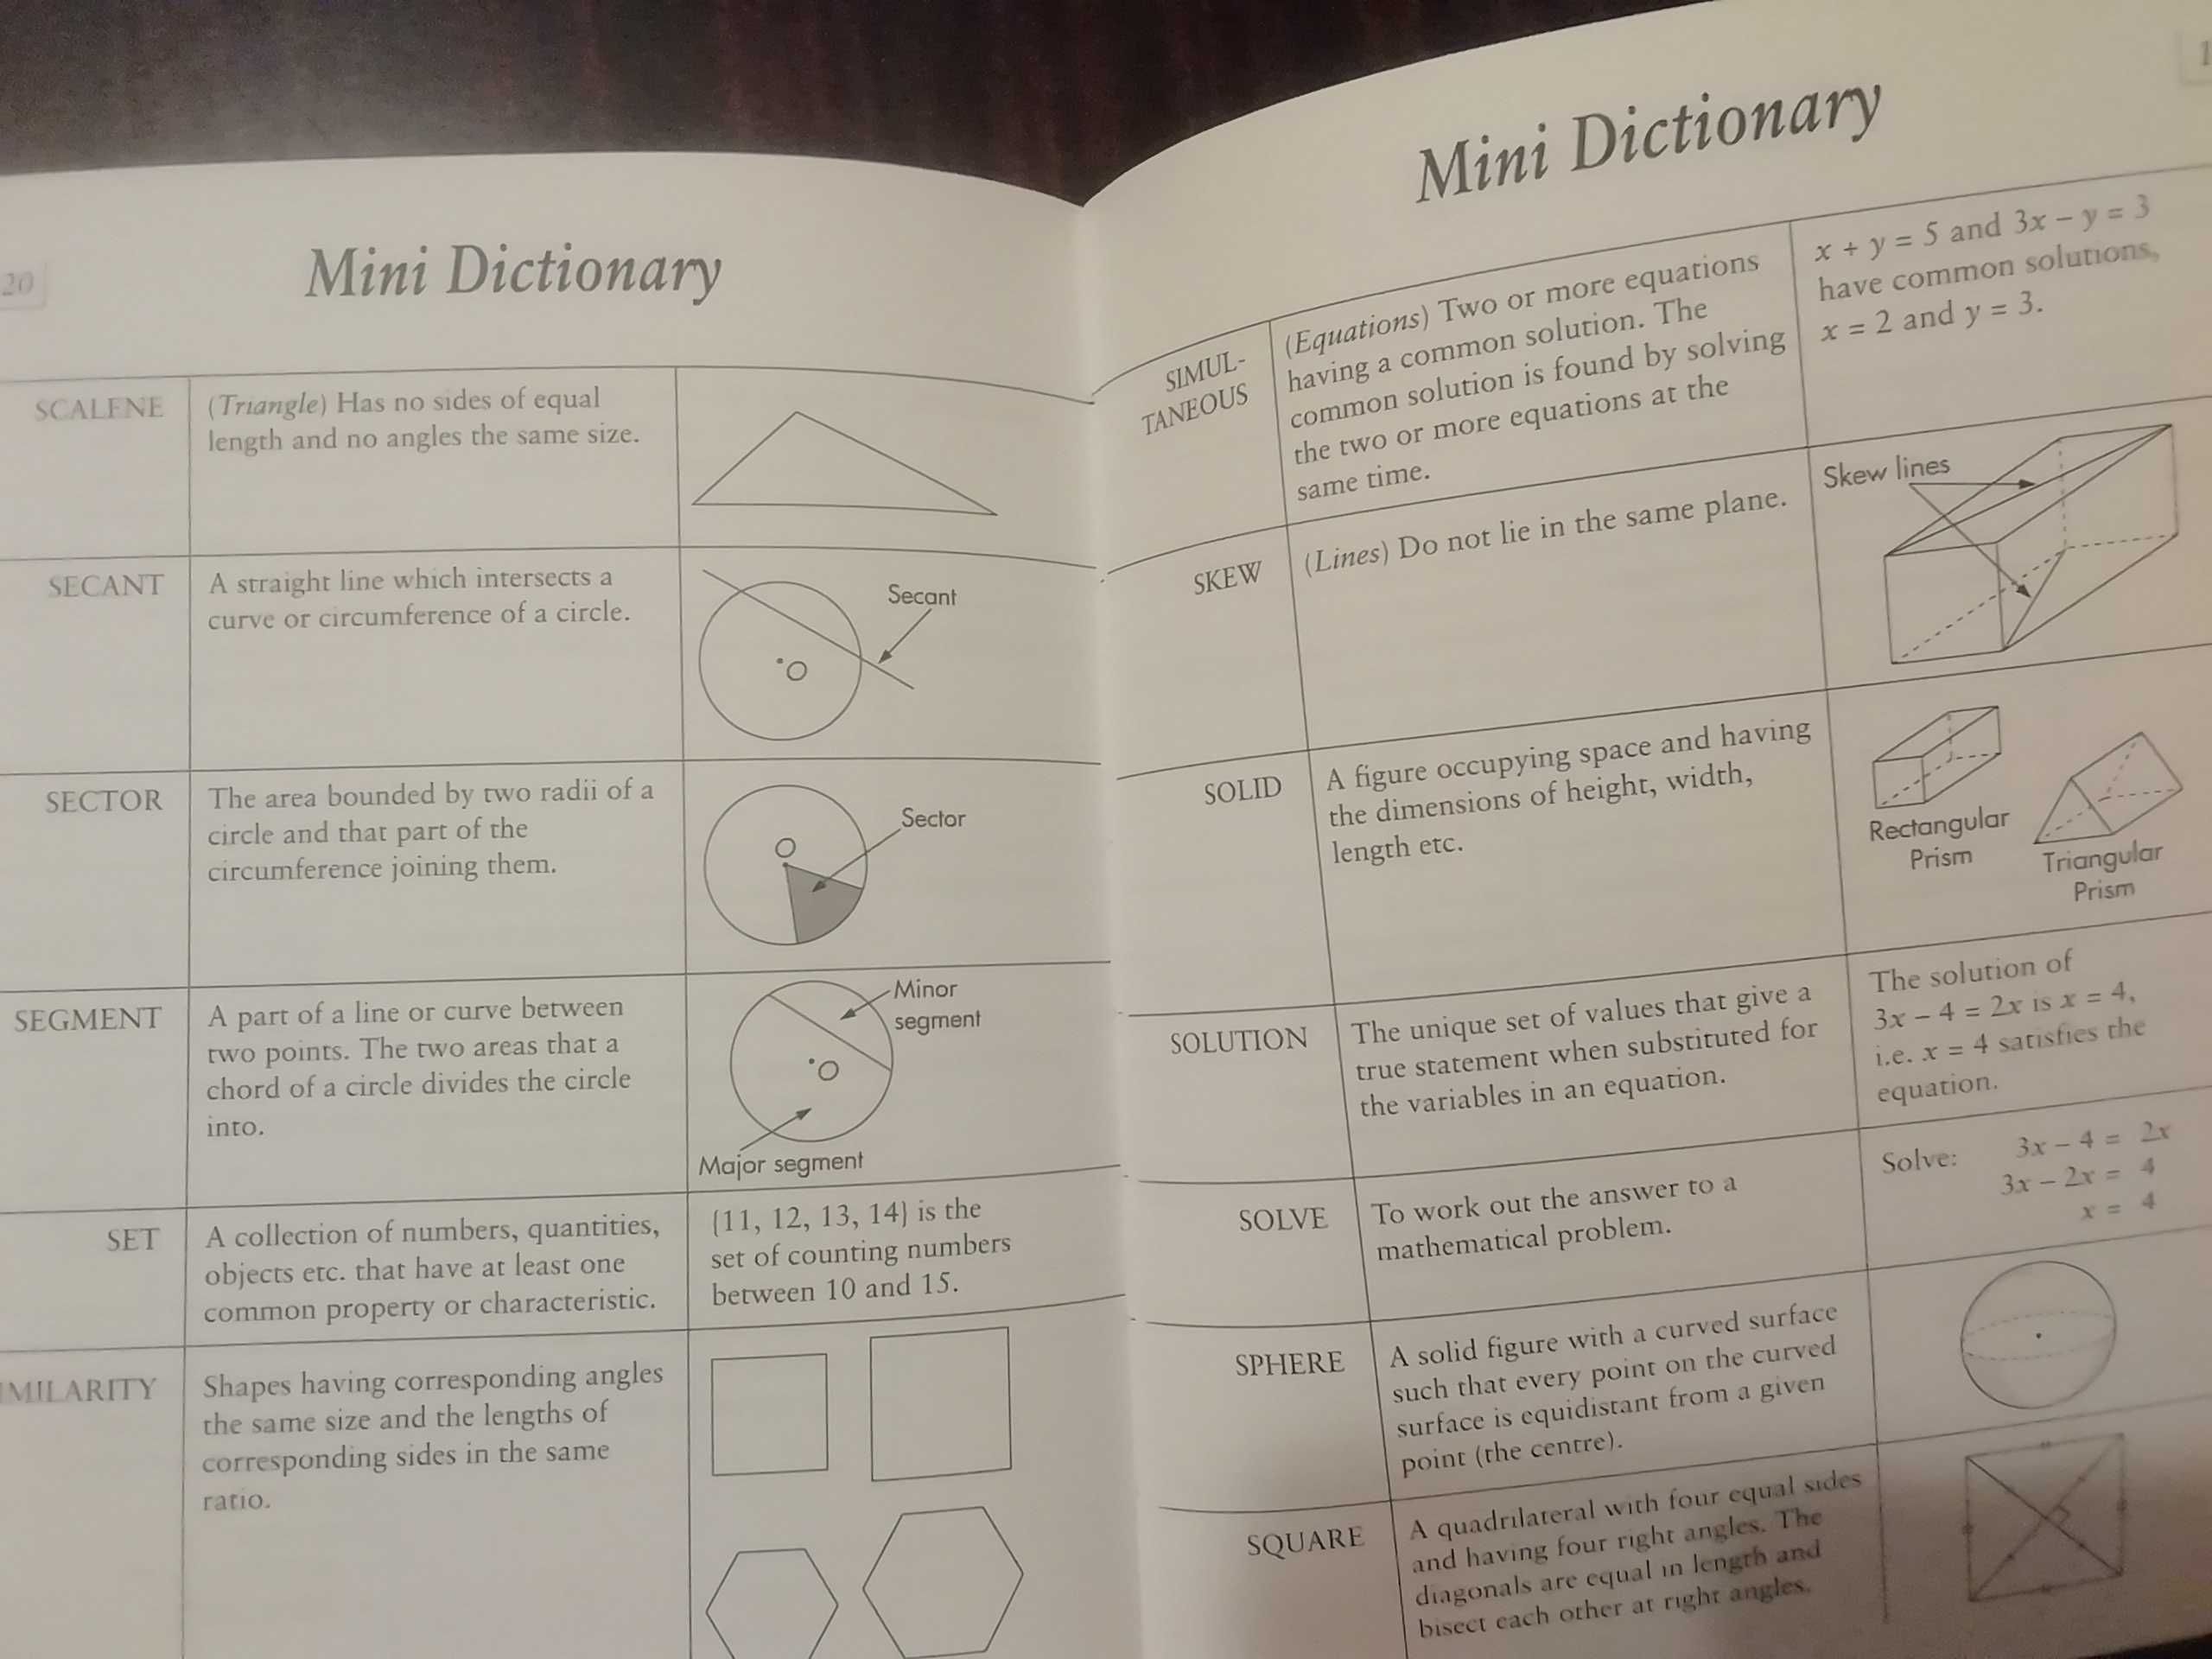 Handy maths manual, Słownik matematyczny po angielsku,